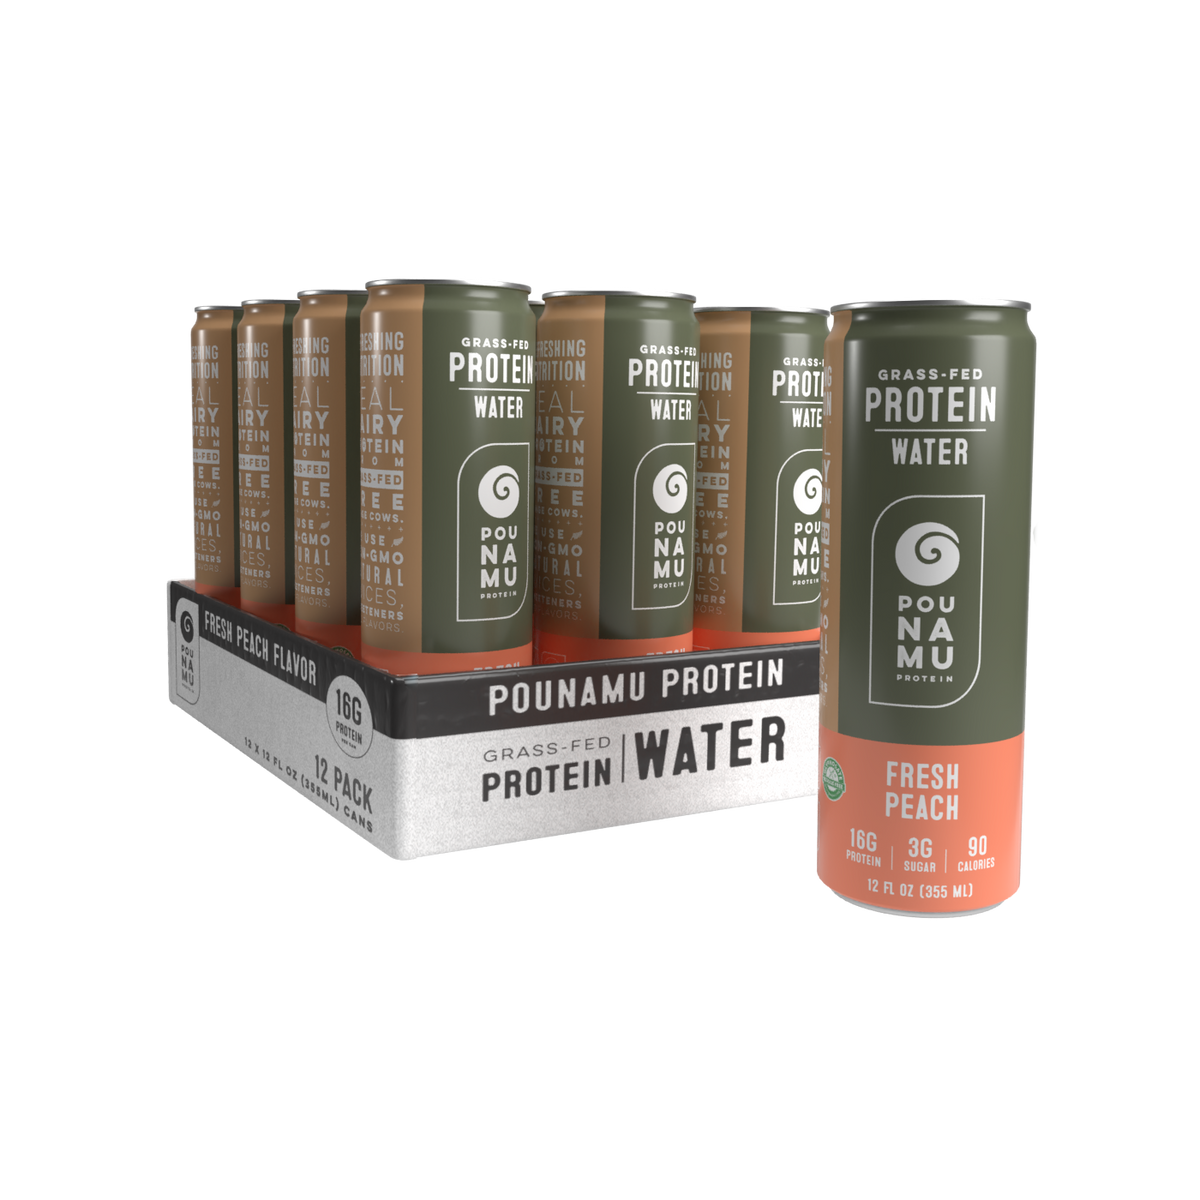 Fresh Peach Protein Water – Pounamu Protein